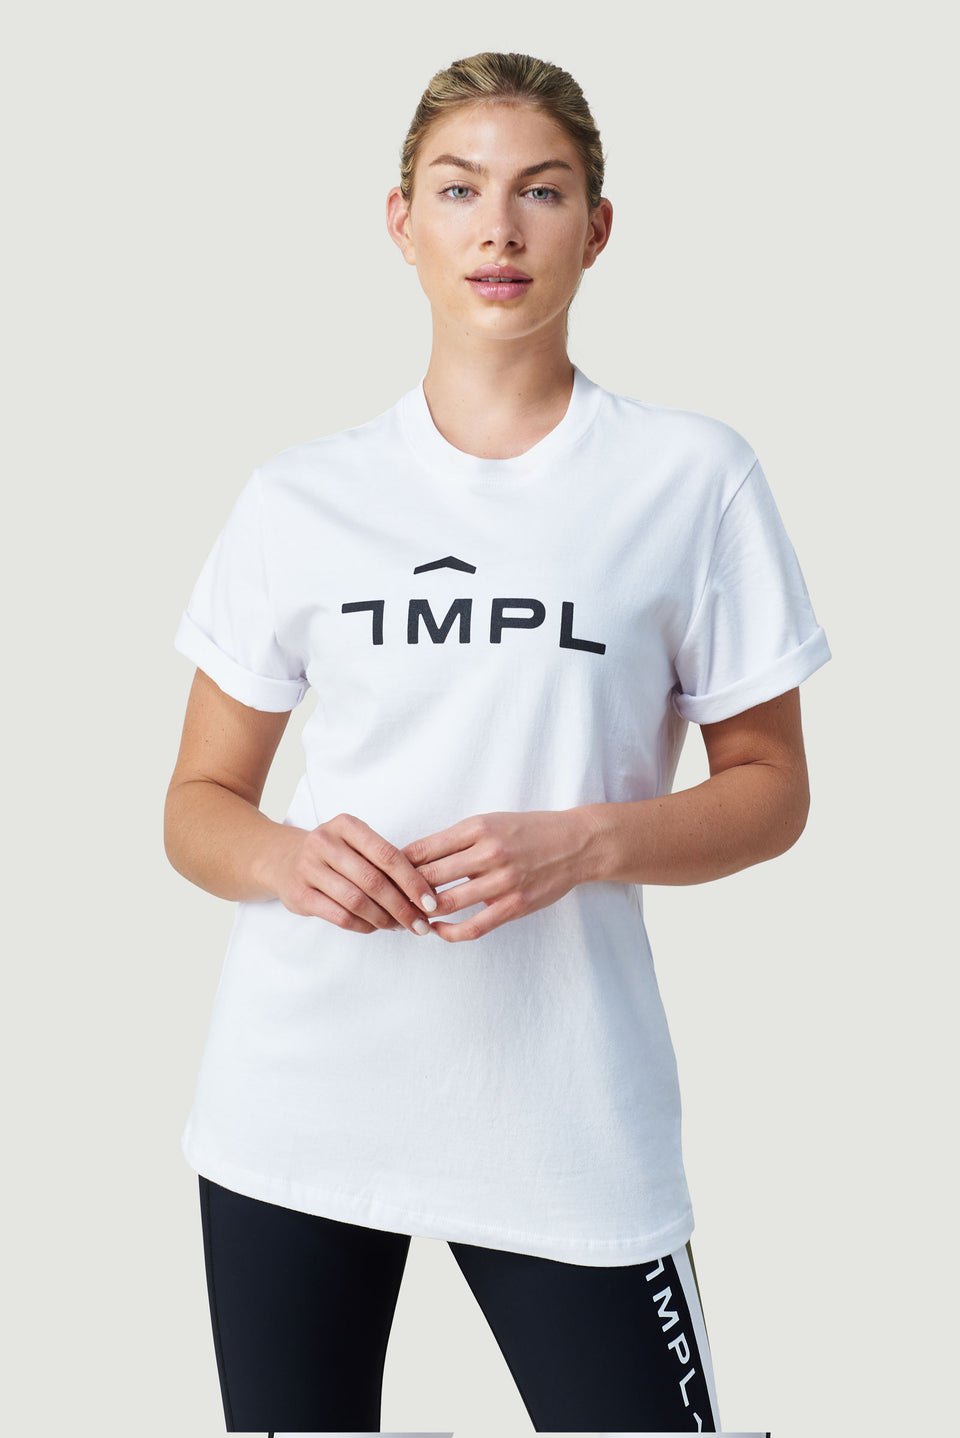 TMPL Sportswear Women's Pirr Short